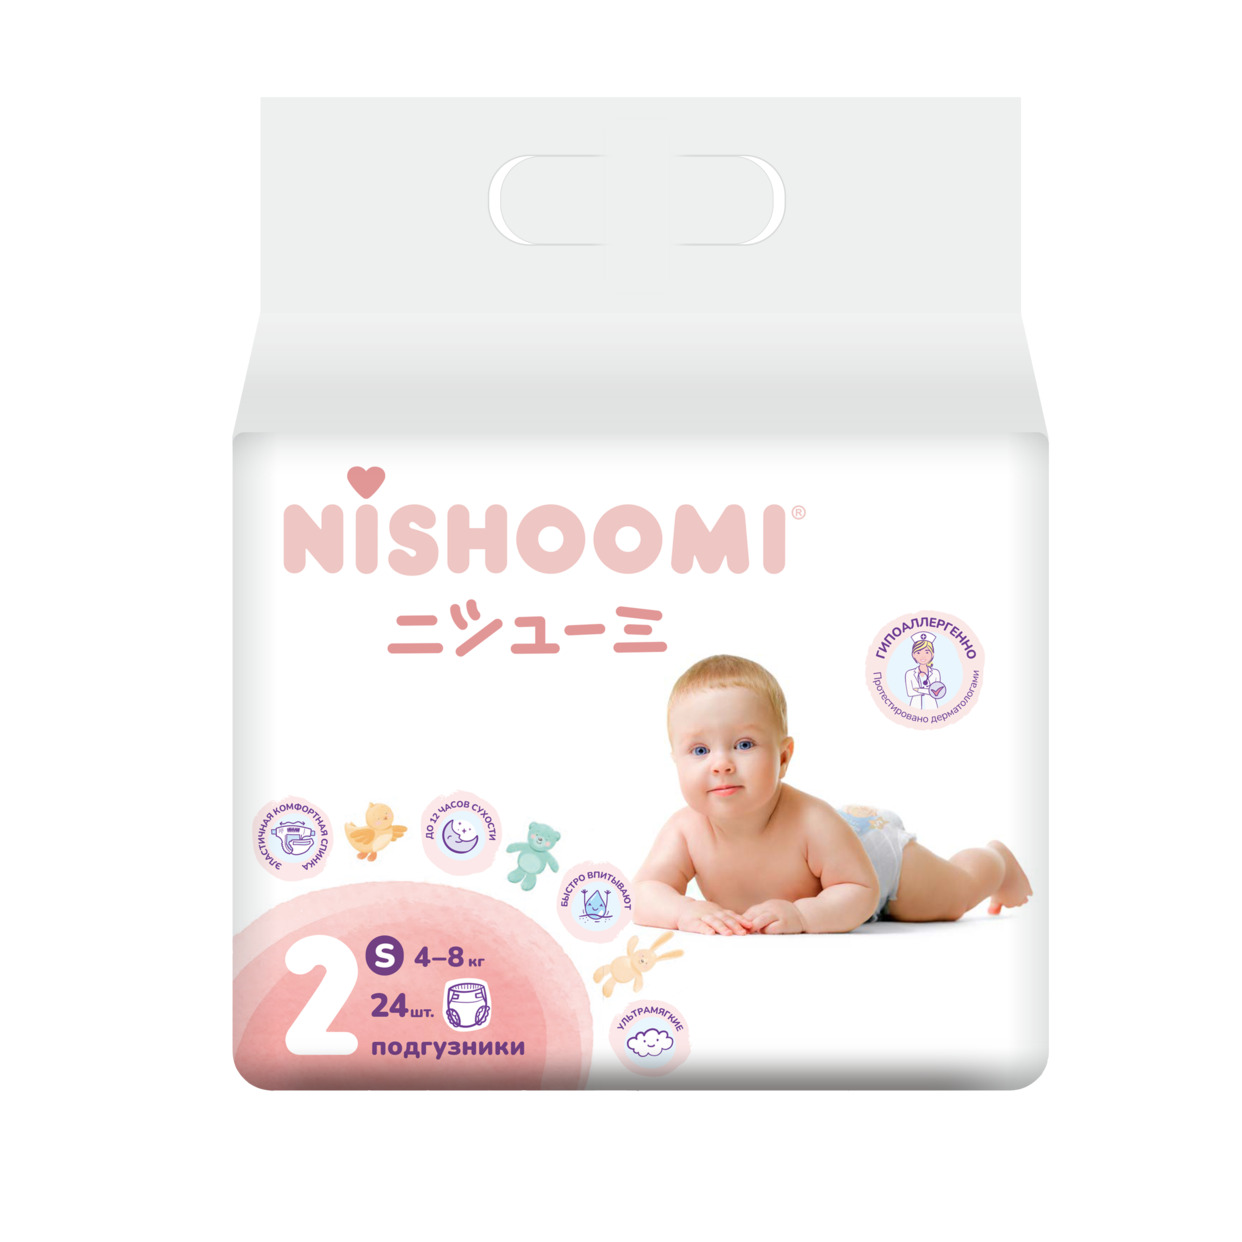 Изделия санитарно-гигиеническиедля ухода за детьми Nishoomi подгузники детские одноразовые. Размер Мини (S (2)), для детей весом 4-8 кг, 24 штуки